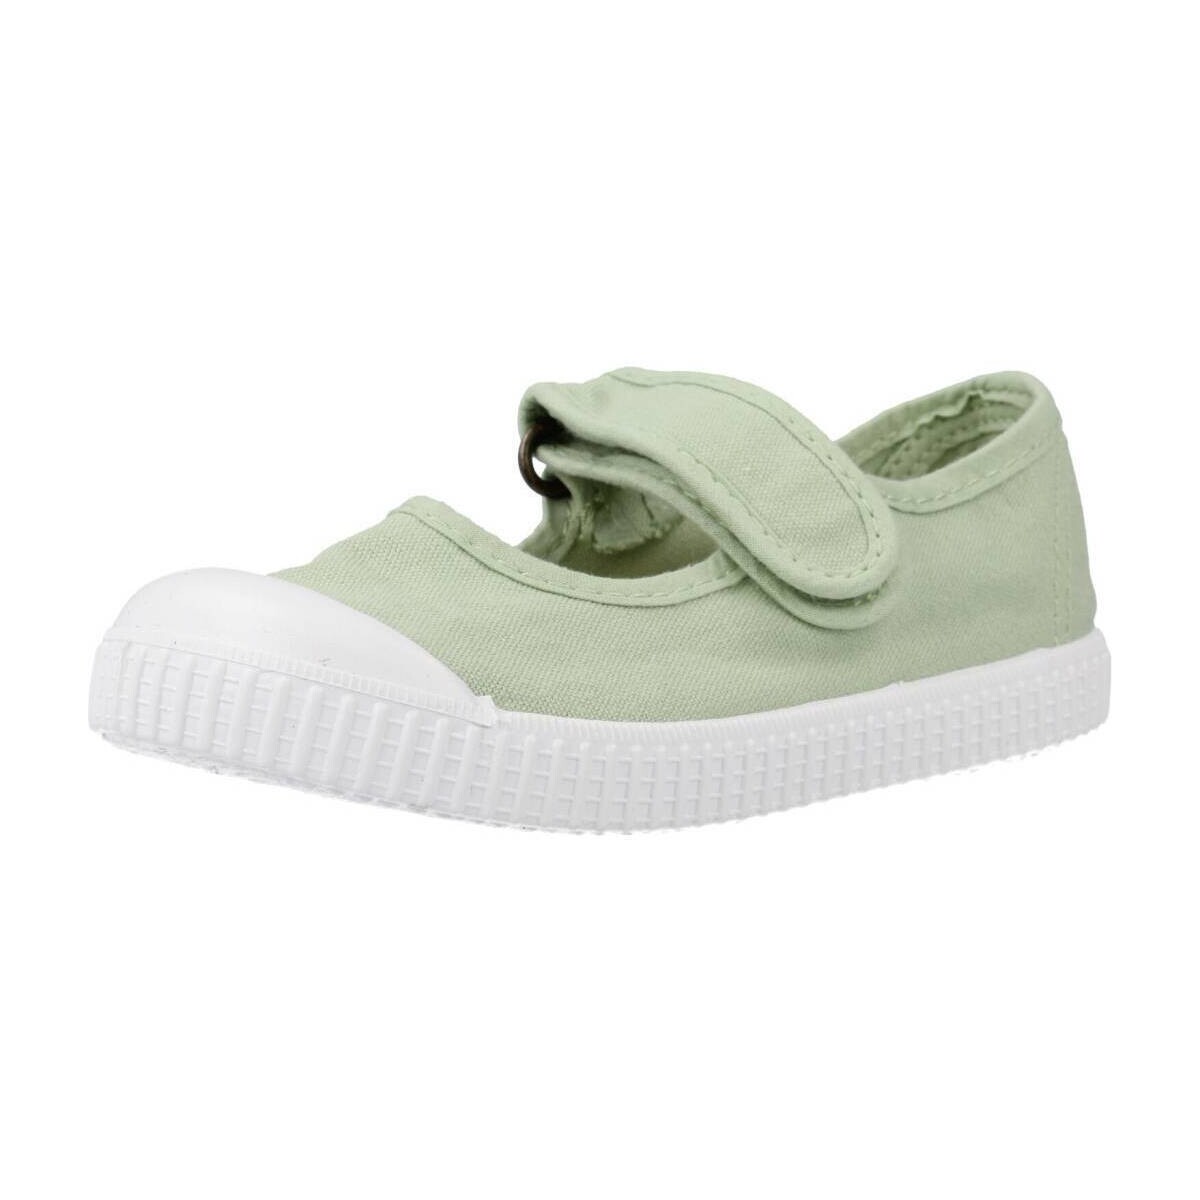 Παπούτσια Αγόρι Χαμηλά Sneakers Victoria 136605 Green